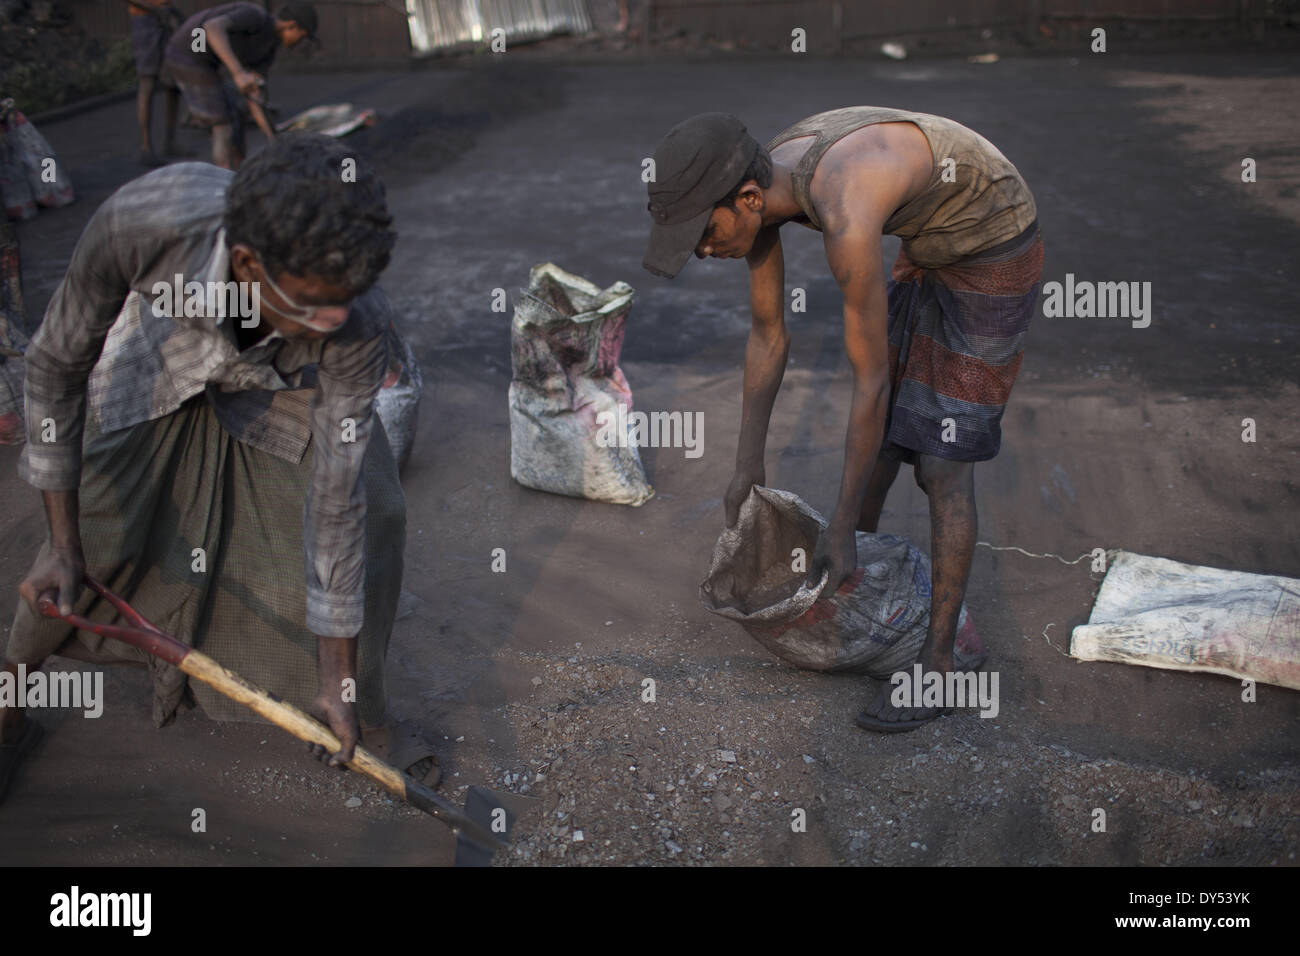 Dhaka, Bangladesch. 7. April 2014. Bangladeshi Fabrikarbeiter arbeiten an einer manuellen brüniert-Fabrik in Gazipur Bezirk am 6. April 2014. Die Arbeiter in der Fabrik kommen vom nördlichen Teil des Landes, und sie sind von 15 bis 18 Jahren. Sie 12 bis 14 Stunden am Tag, sechs Tage die Woche arbeiten und verdienen nur Tk.2000, Tk.3000 (1 USD = 78 Taka) im Monat. Die Herstellung von schwarzem Eisenoxid gilt als einer der gefährlichsten Berufe in Bangladesch. Arbeiter arbeiten unter extremen Bedingungen ohne irgendwelche Sicherheitsmaßnahmen wie Schutzbrille, Gesichtsmasken, Handschuhe, Arbeitsschuhe und so weiter. (Credi Stockfoto